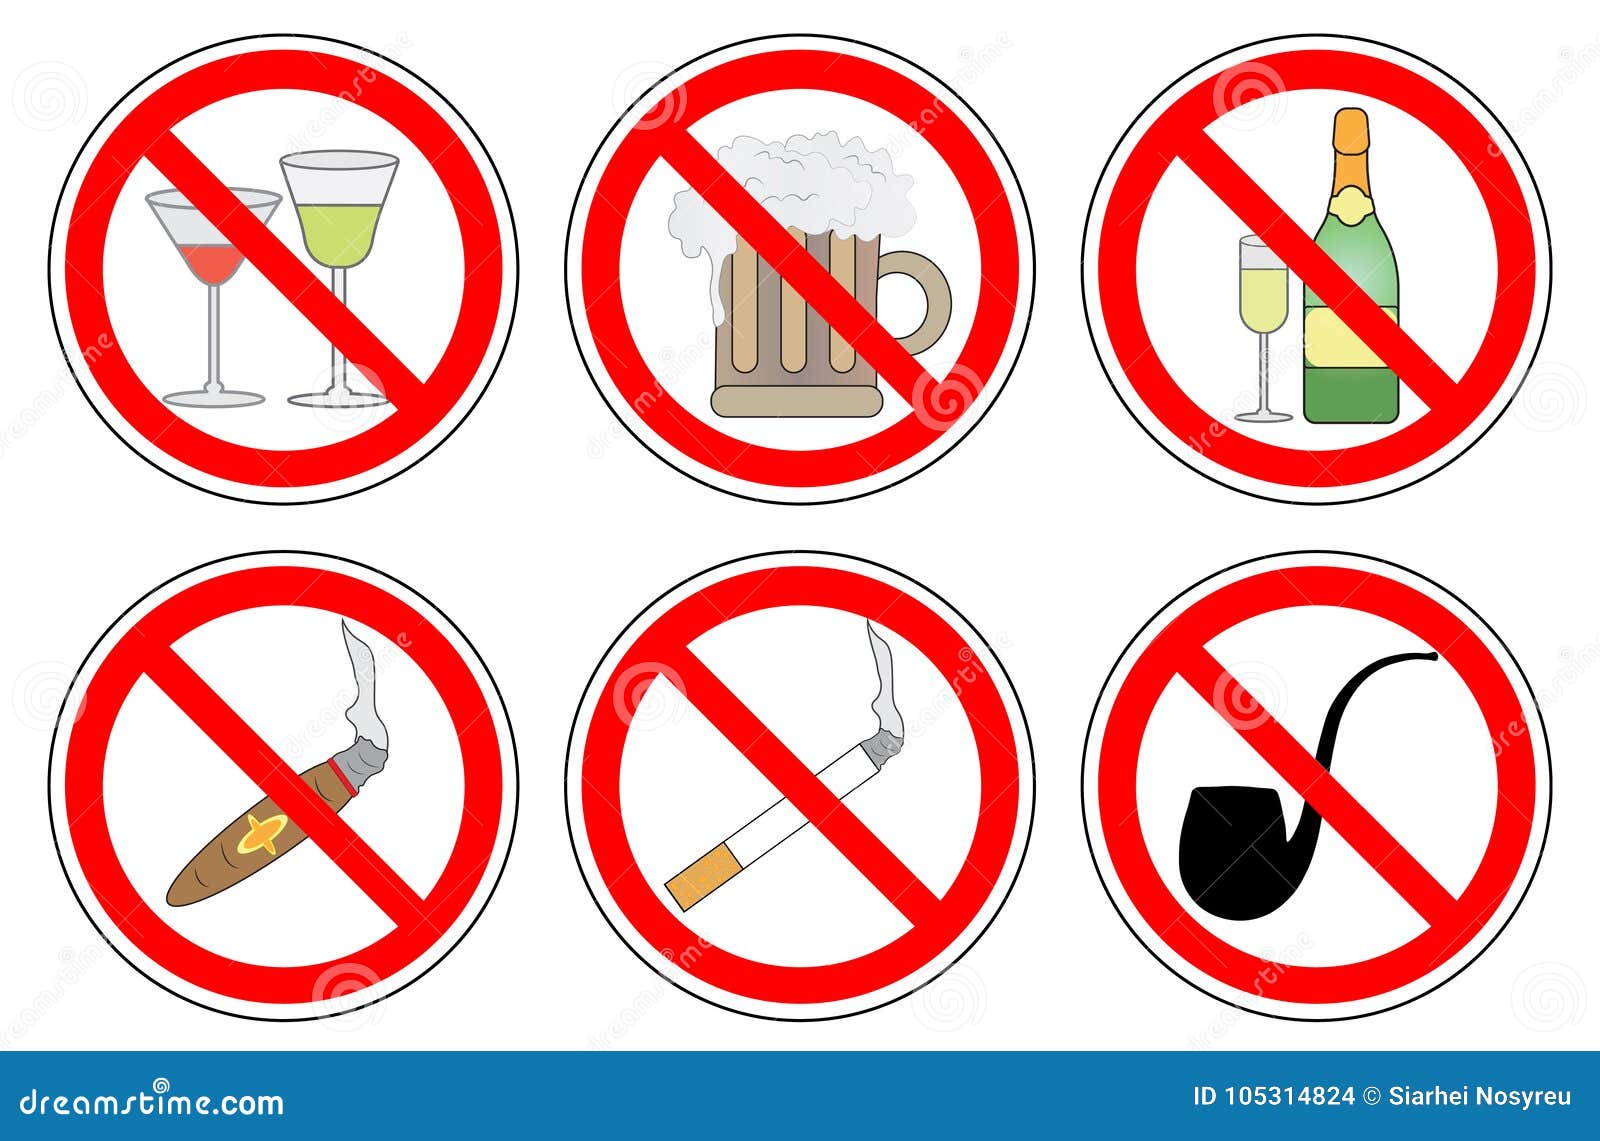 Без врача нельзя. Курение и распитие напитков запрещено. Курение и алкоголь запрещено табличка.